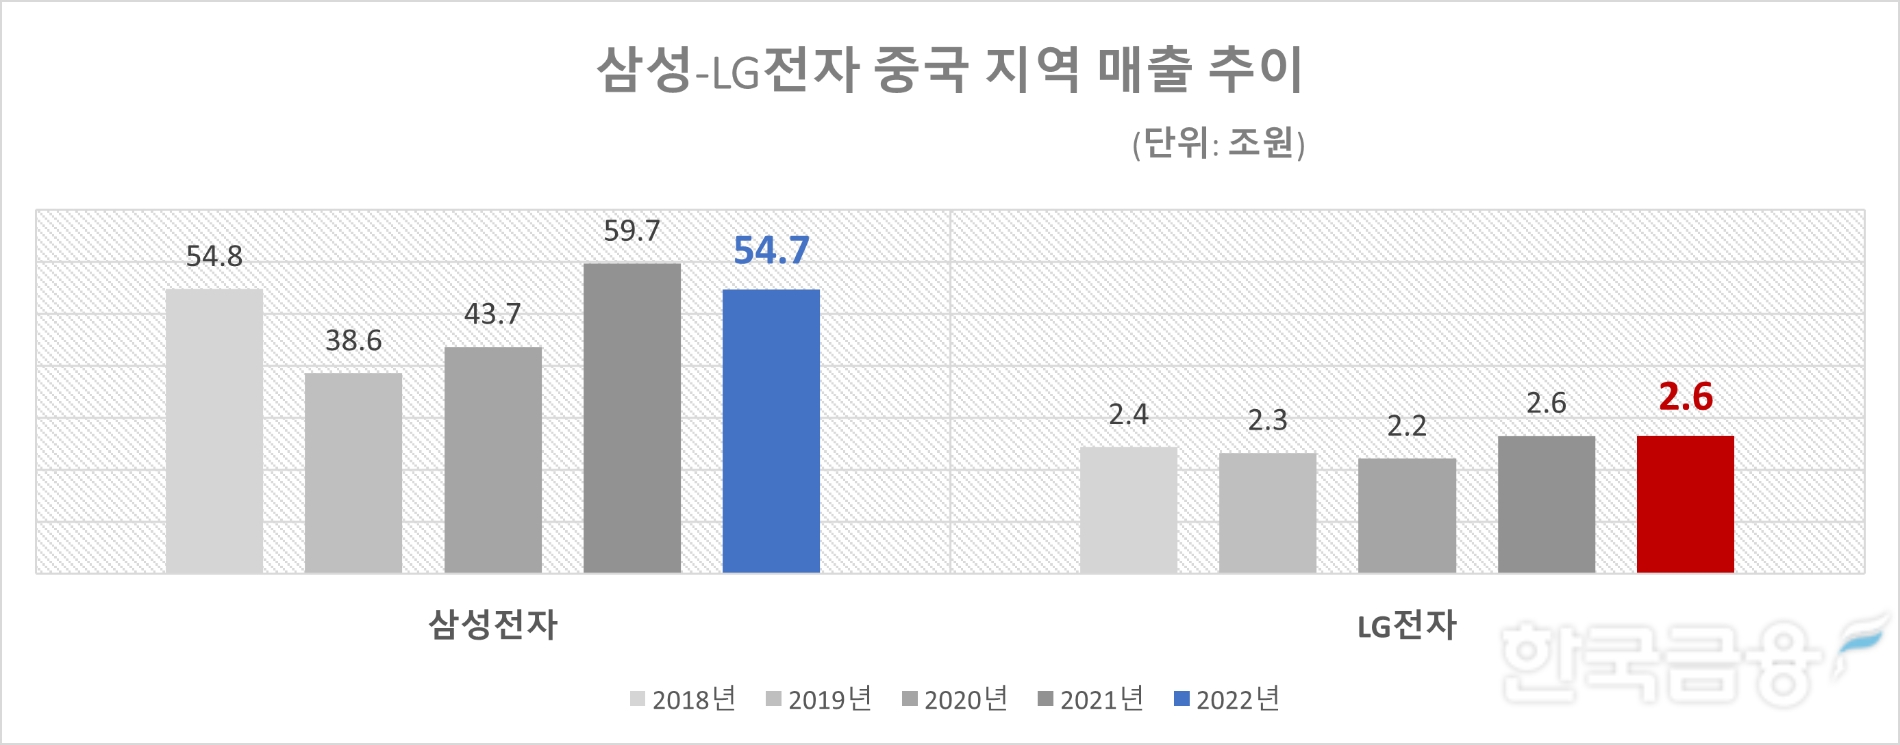 삼성-LG전자 중국 지역 매출 추이. 자료=각 사 사업보고서.